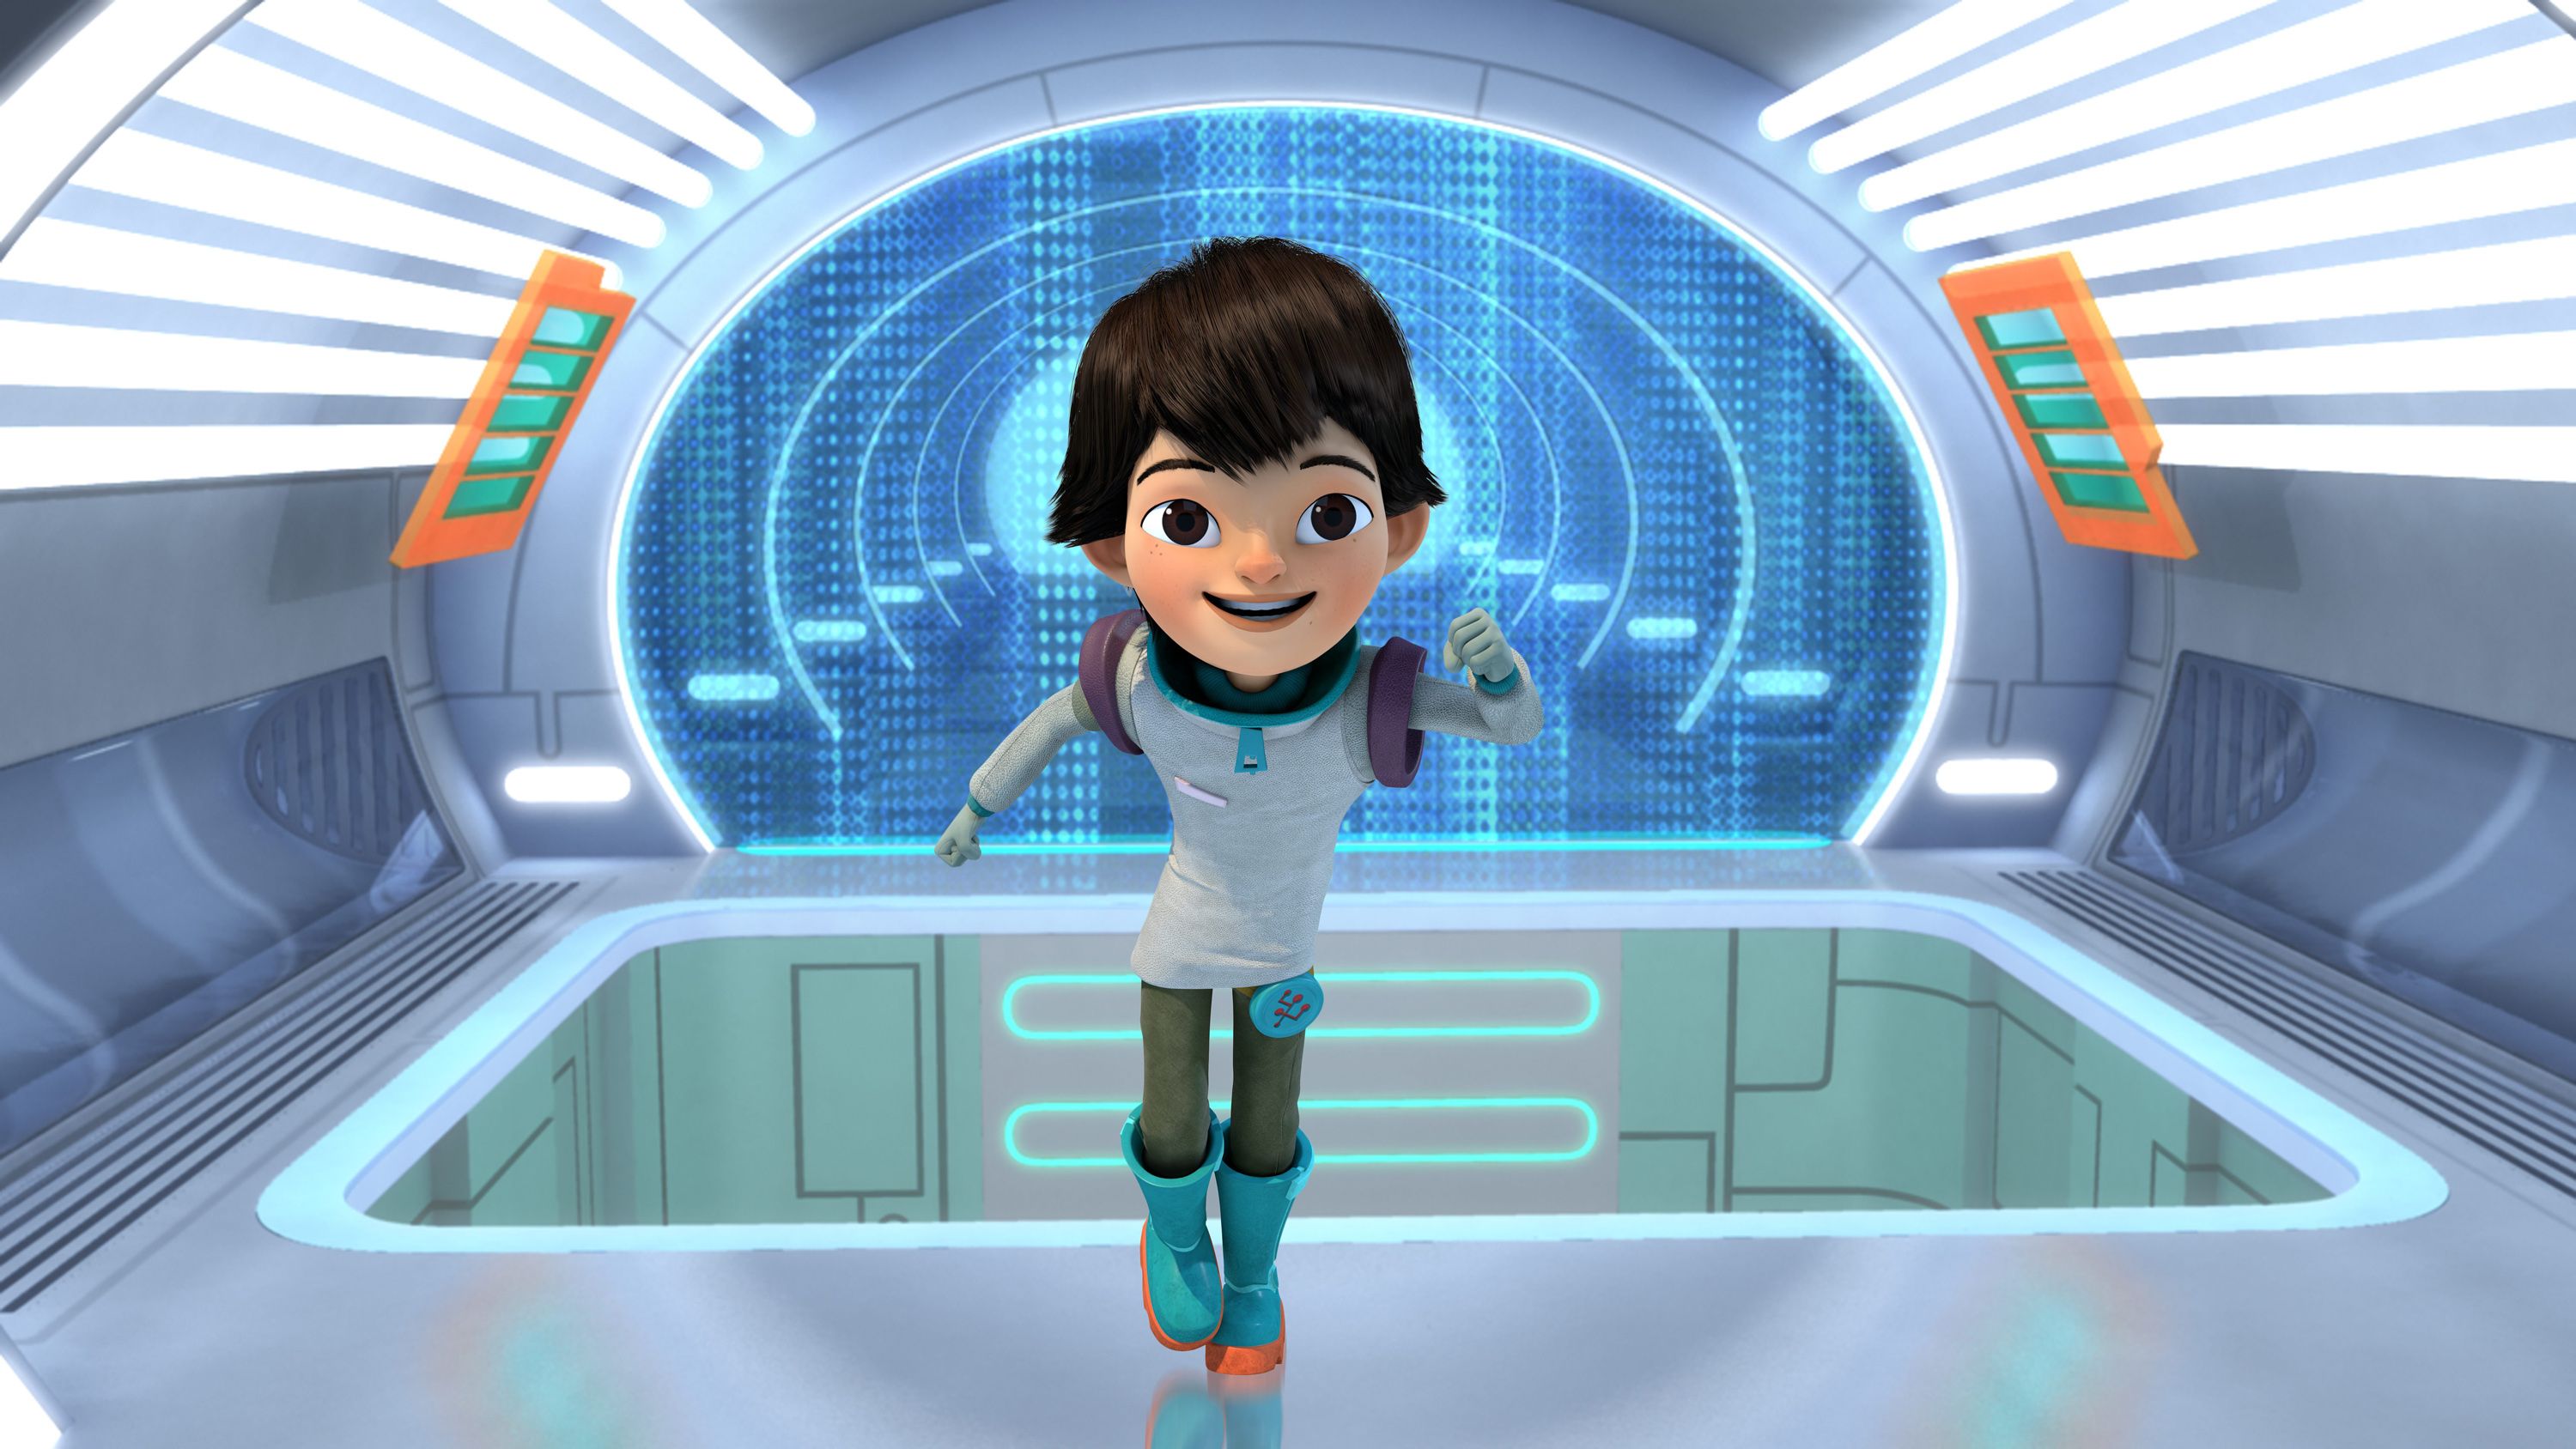 迪斯尼太空题材动画: 明日世界的米尔斯1+2季网盘下载